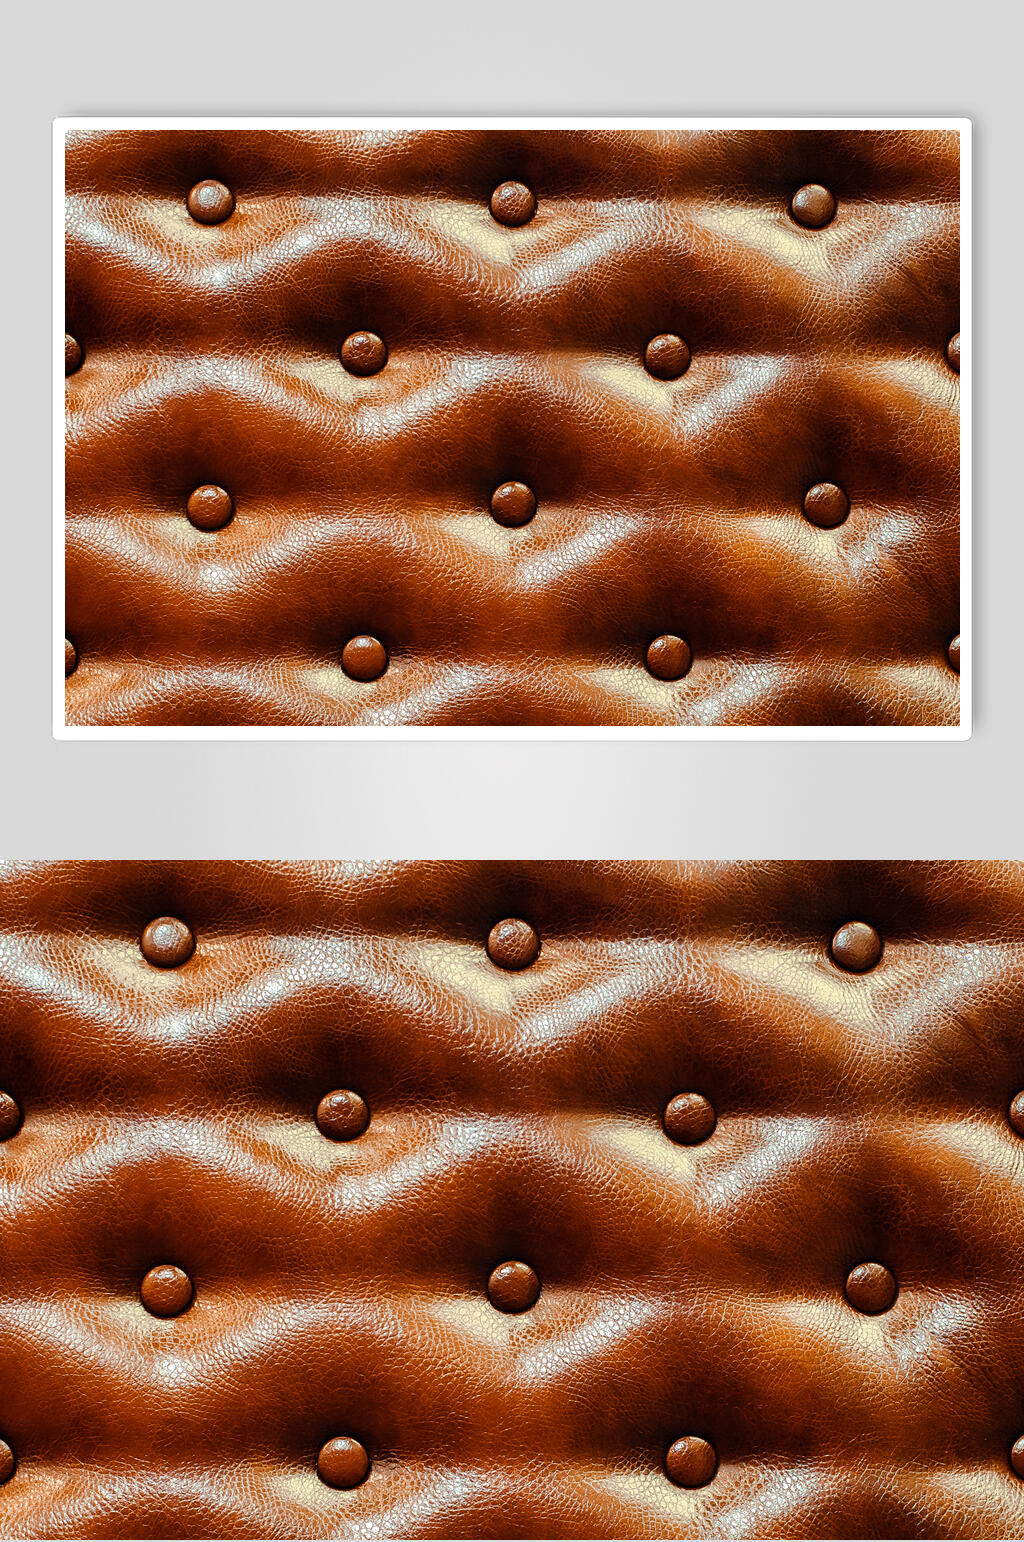 褐色沙发皮革质感贴图素材